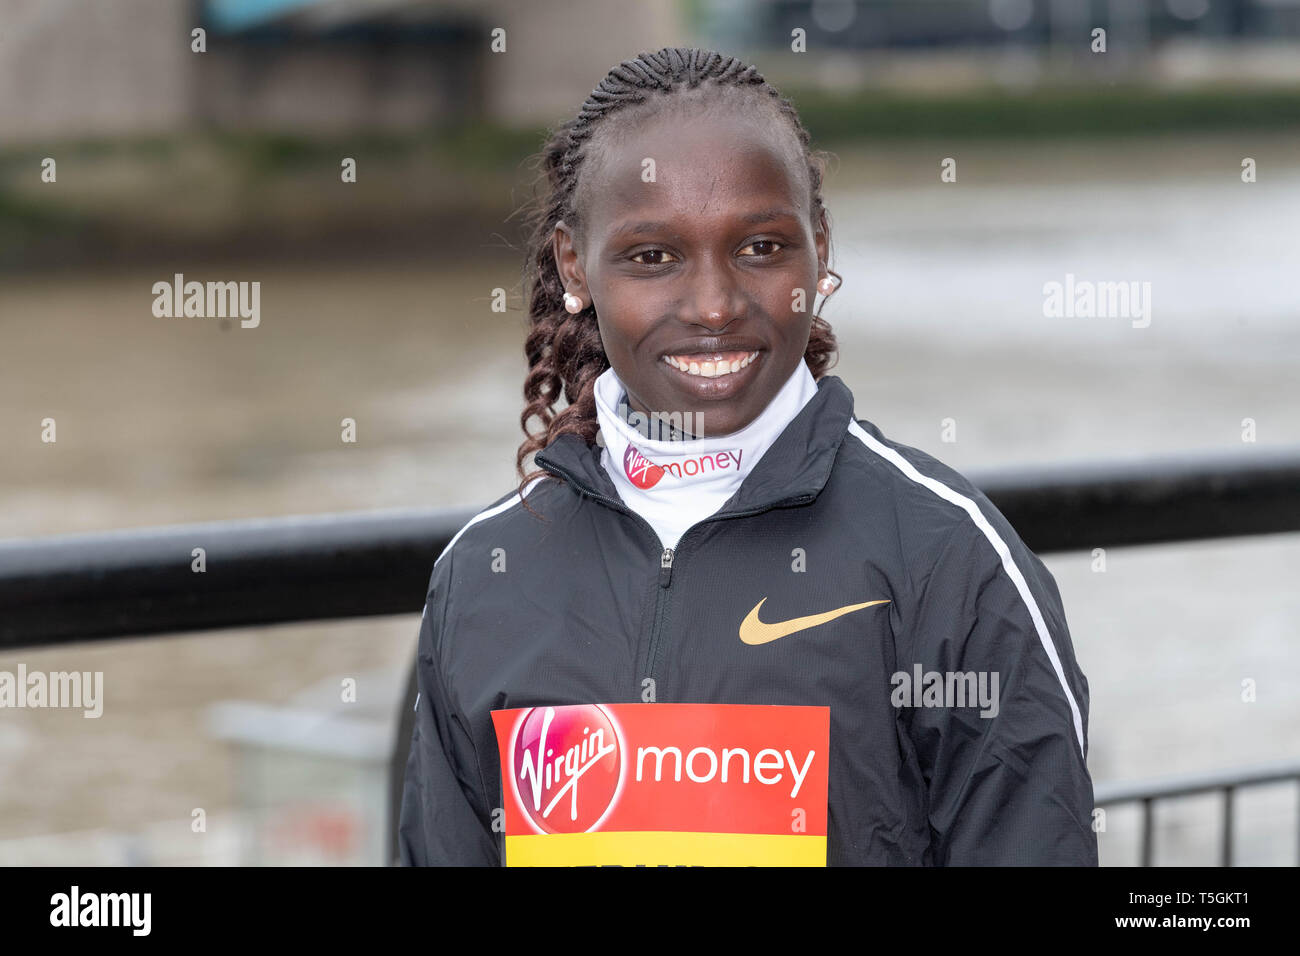 25thApril Londres 2019, Virgin Money Maratón de Londres Photocall corredores de élite de mujeres Vivian Cheruiyot, Crédito: Ian Davidson/Alamy Live News Foto de stock